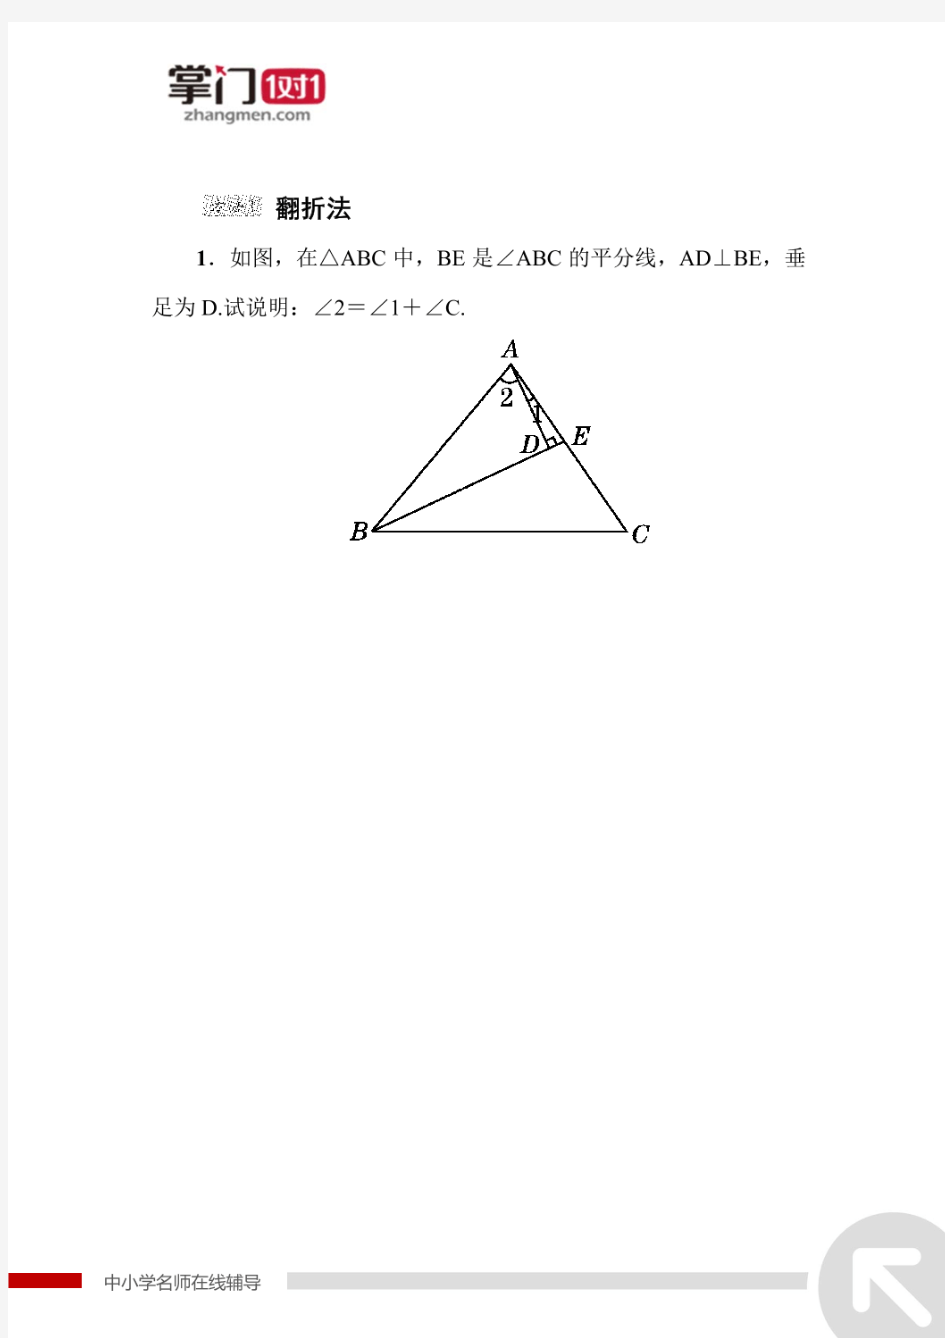 构造全等三角形的四种常用方法